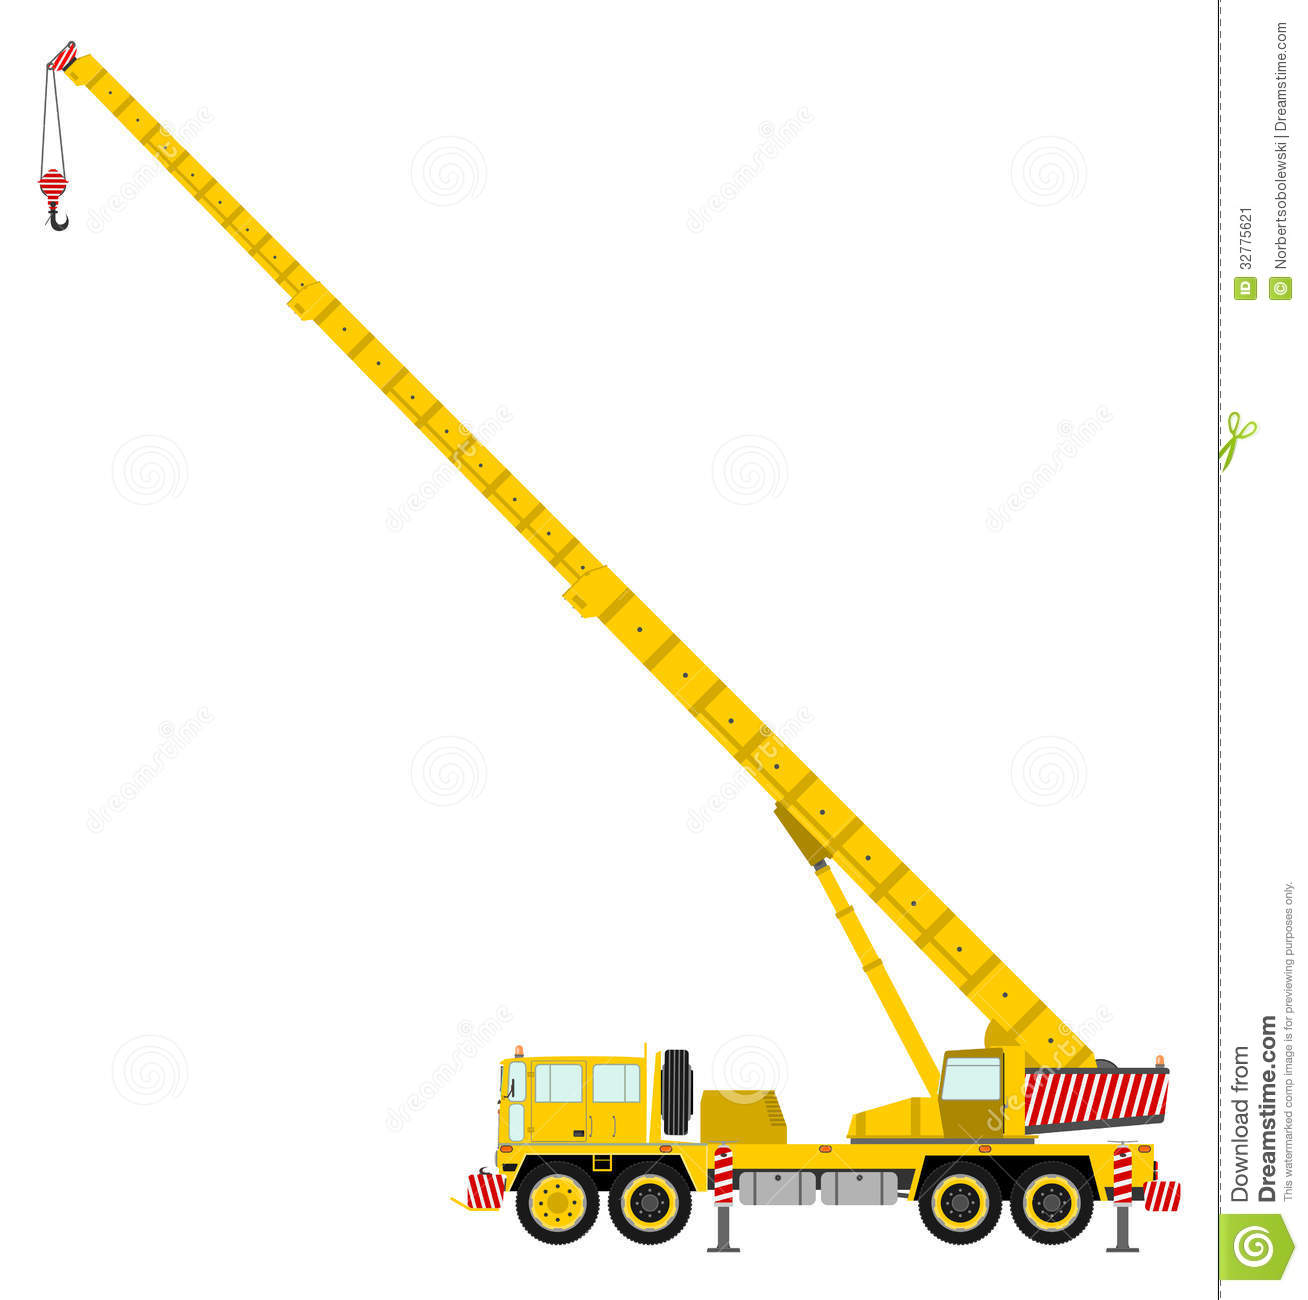 Construction crane clipart.